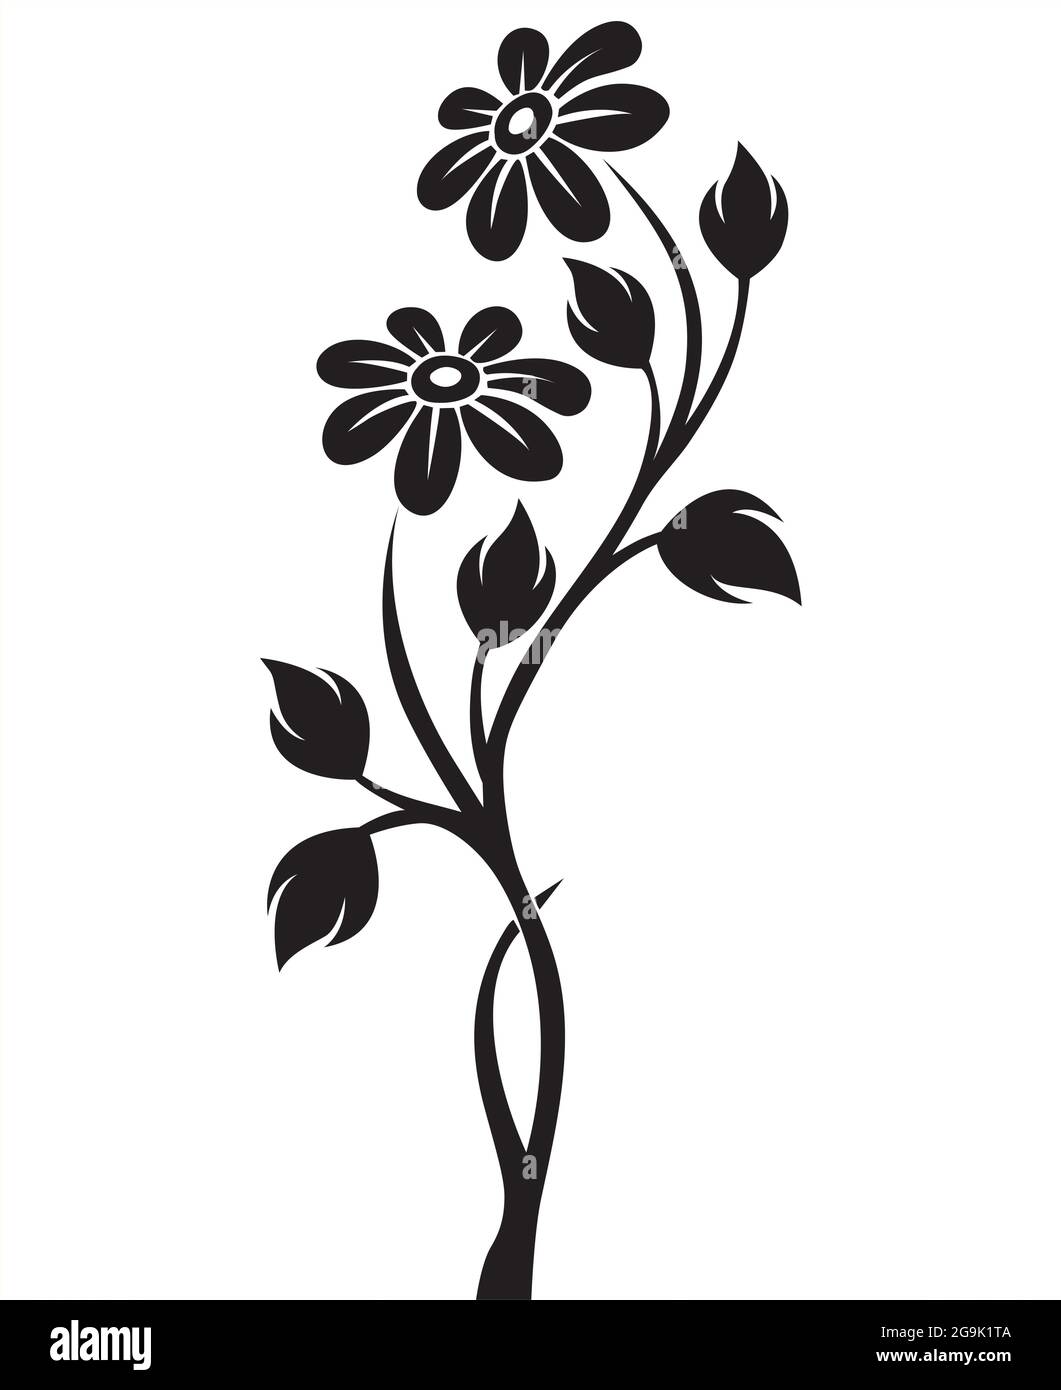 Elegant Black And White Flower Vector Stock Vector Image & Art - Alamy